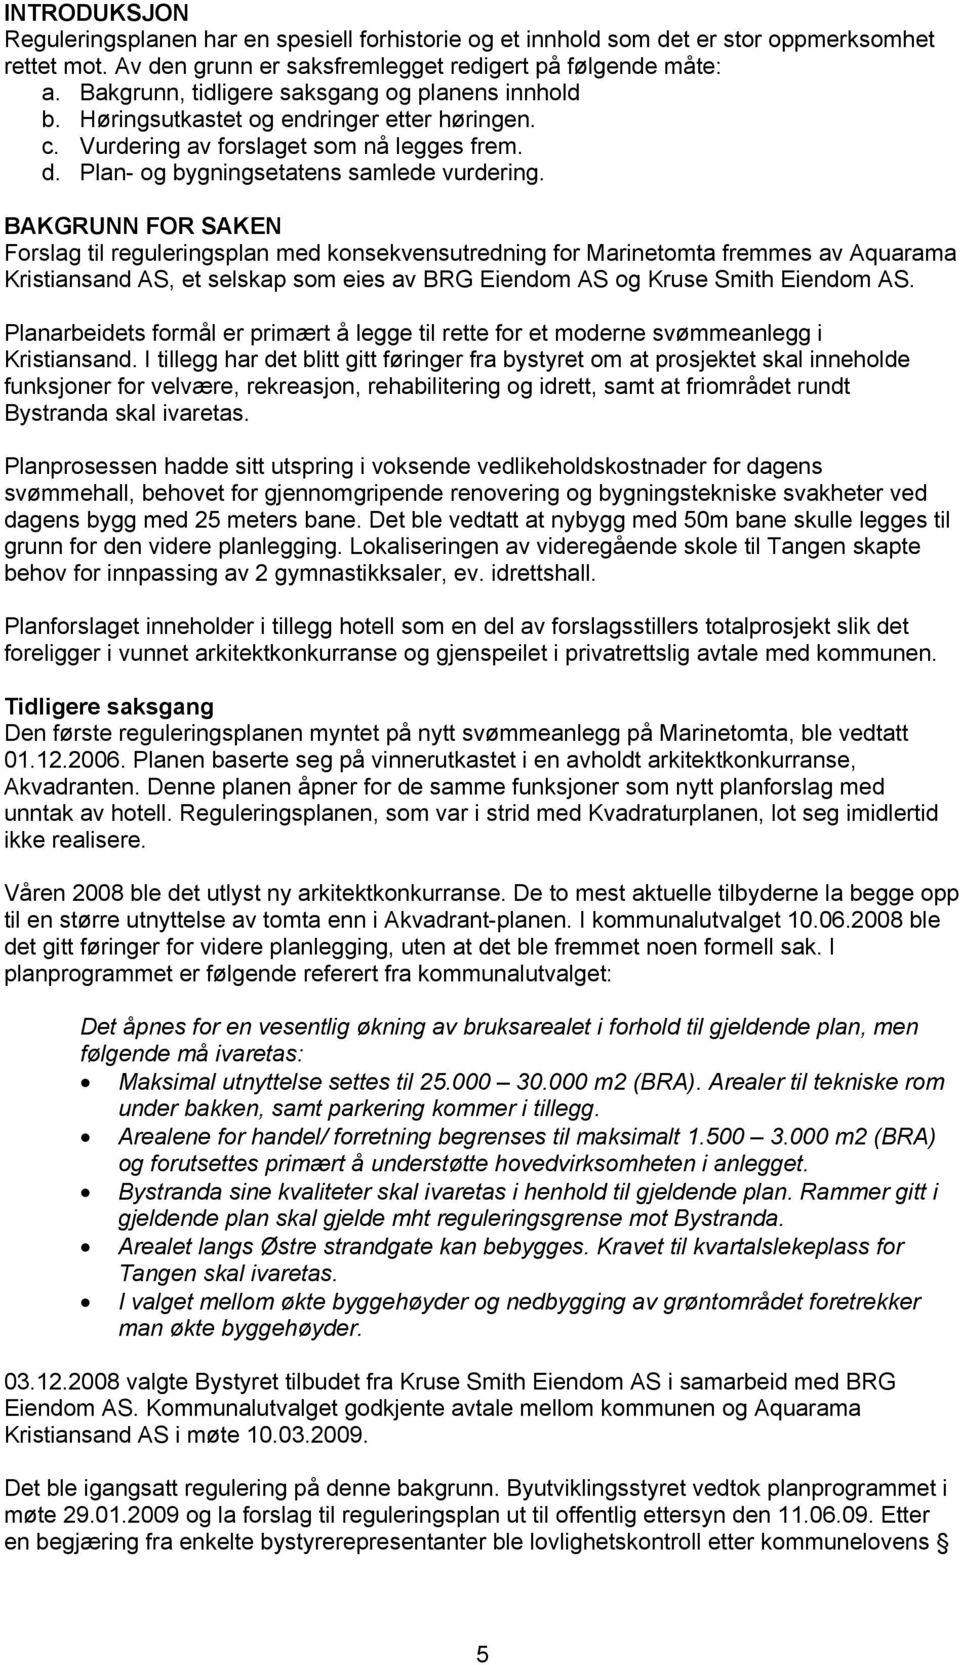 BAKGRUNN FOR SAKEN Forslag til reguleringsplan med konsekvensutredning for Marinetomta fremmes av Aquarama Kristiansand AS, et selskap som eies av BRG Eiendom AS og Kruse Smith Eiendom AS.